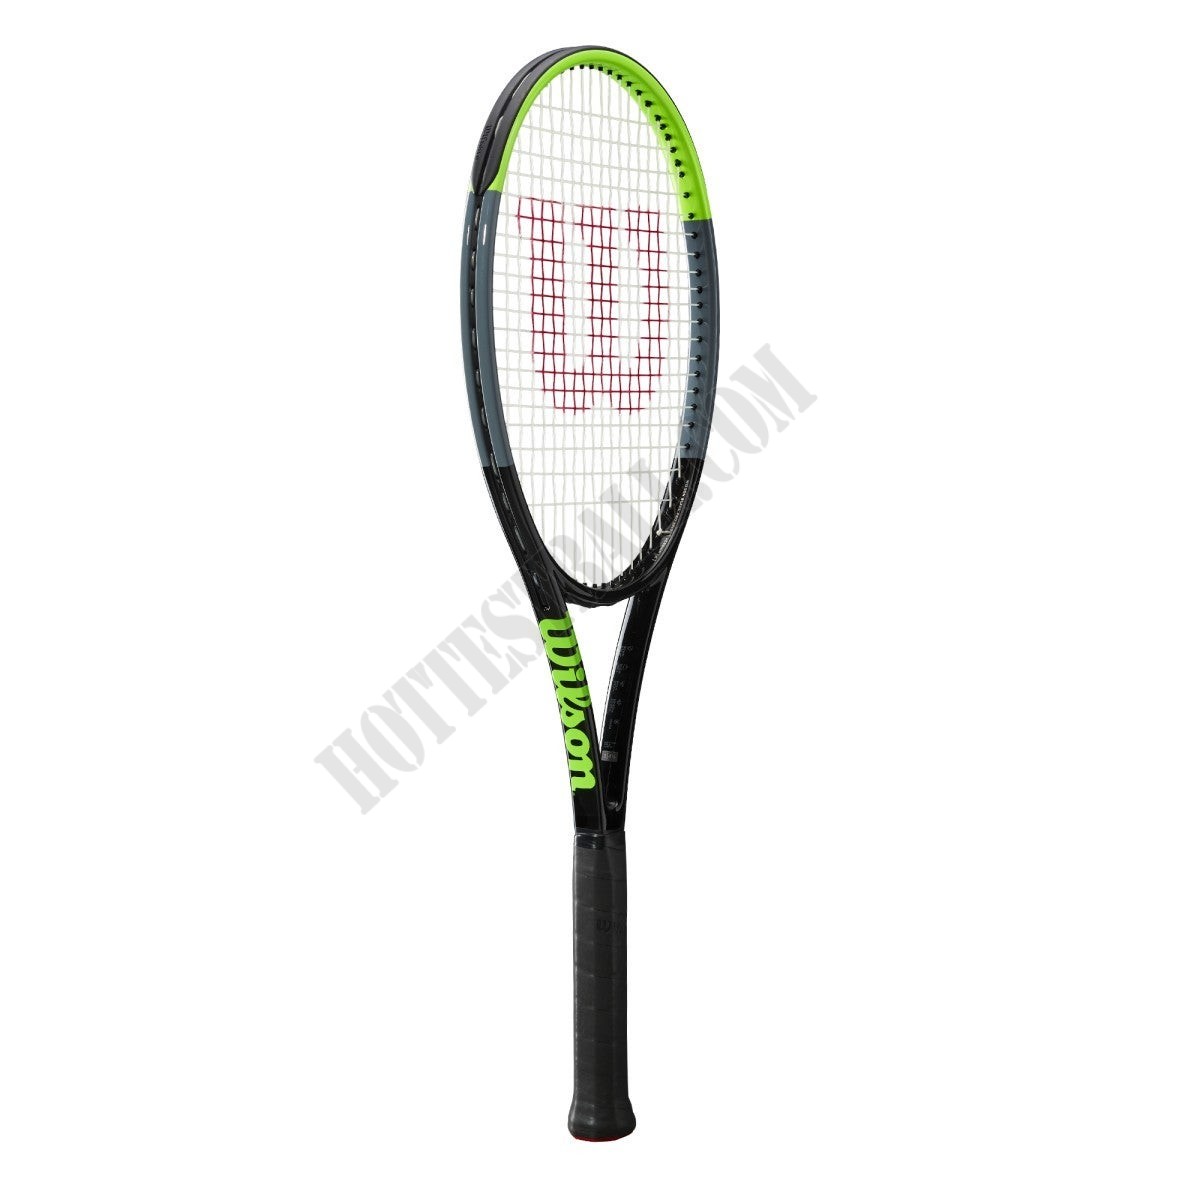 Blade Pro (18x20) Tennis Racket - Wilson Discount Store - Blade Pro (18x20) Tennis Racket - Wilson Discount Store